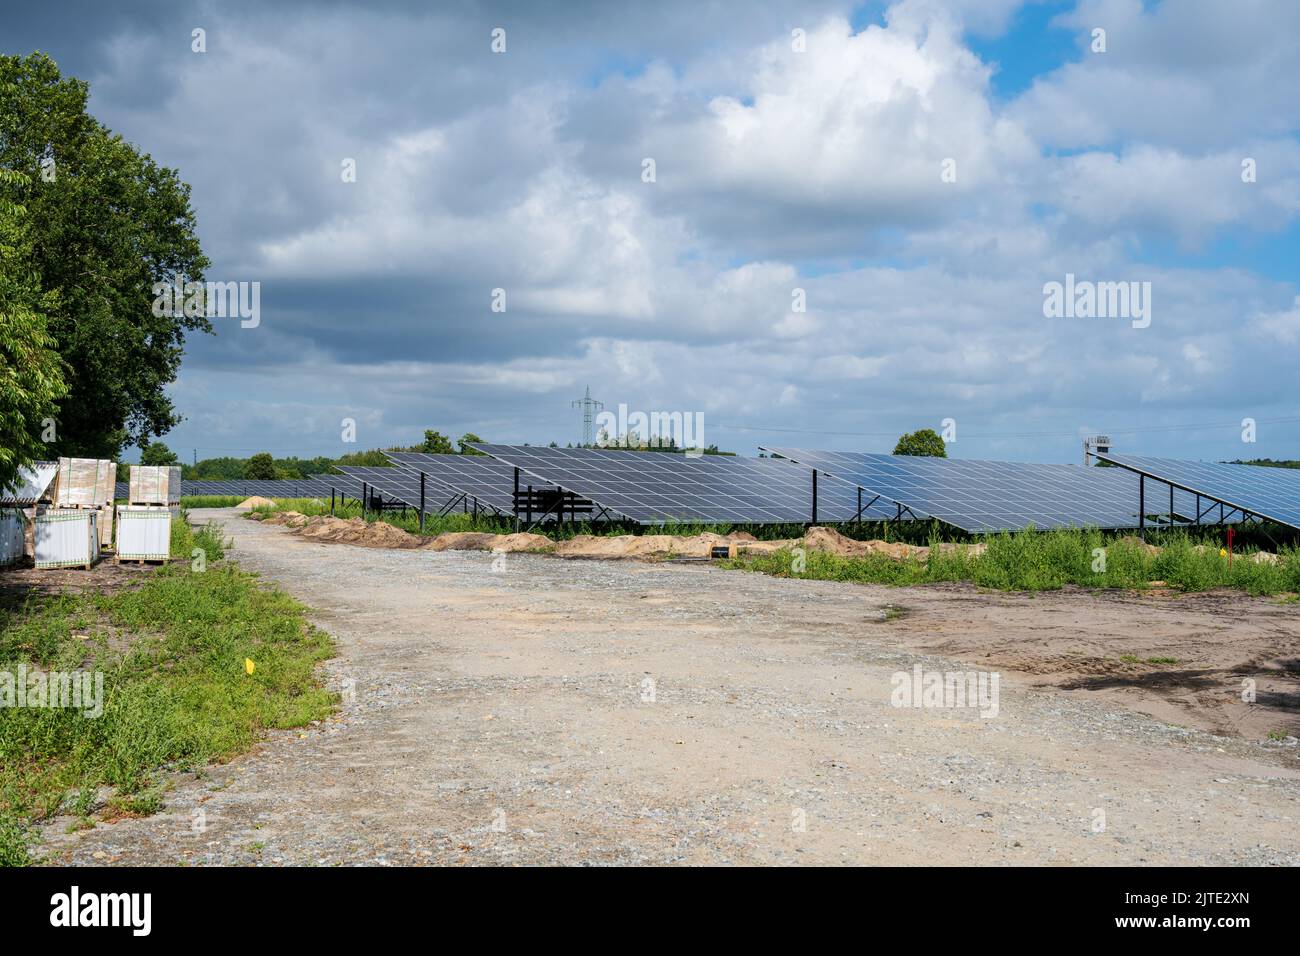 Großbaustelle einer neuen Votovoltaikanlage auf einem Acker en Schleswig-Holstein Foto de stock